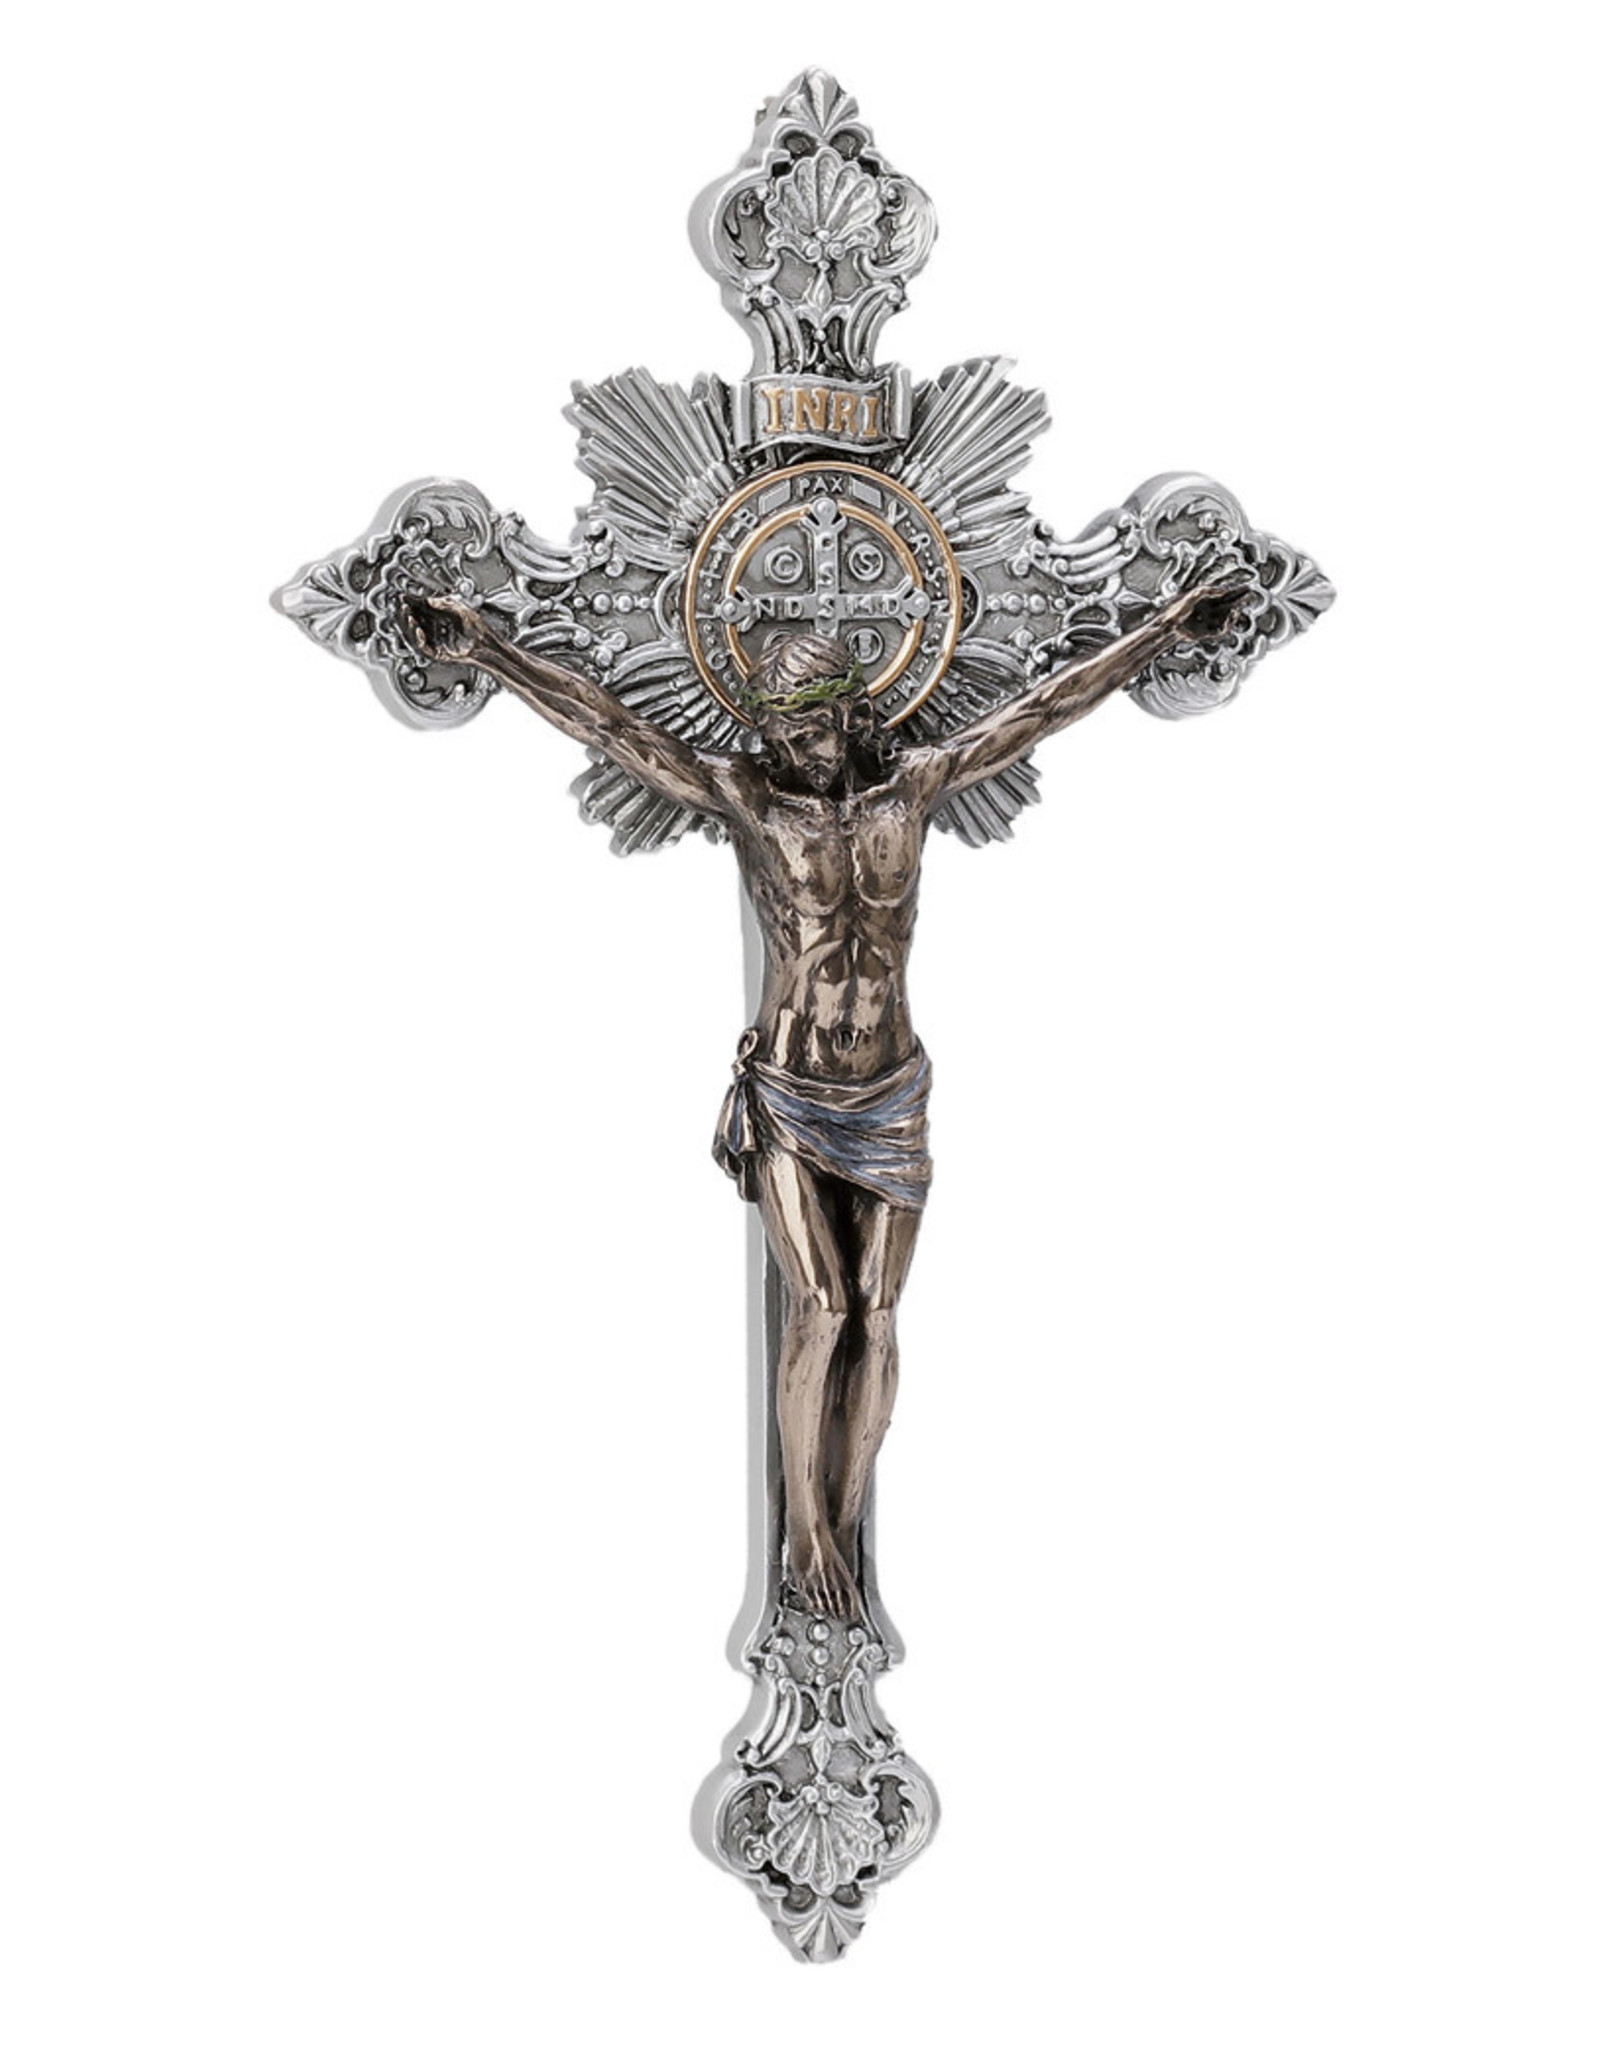 Crucifix Benedict 7.75" Pewter/Bronze